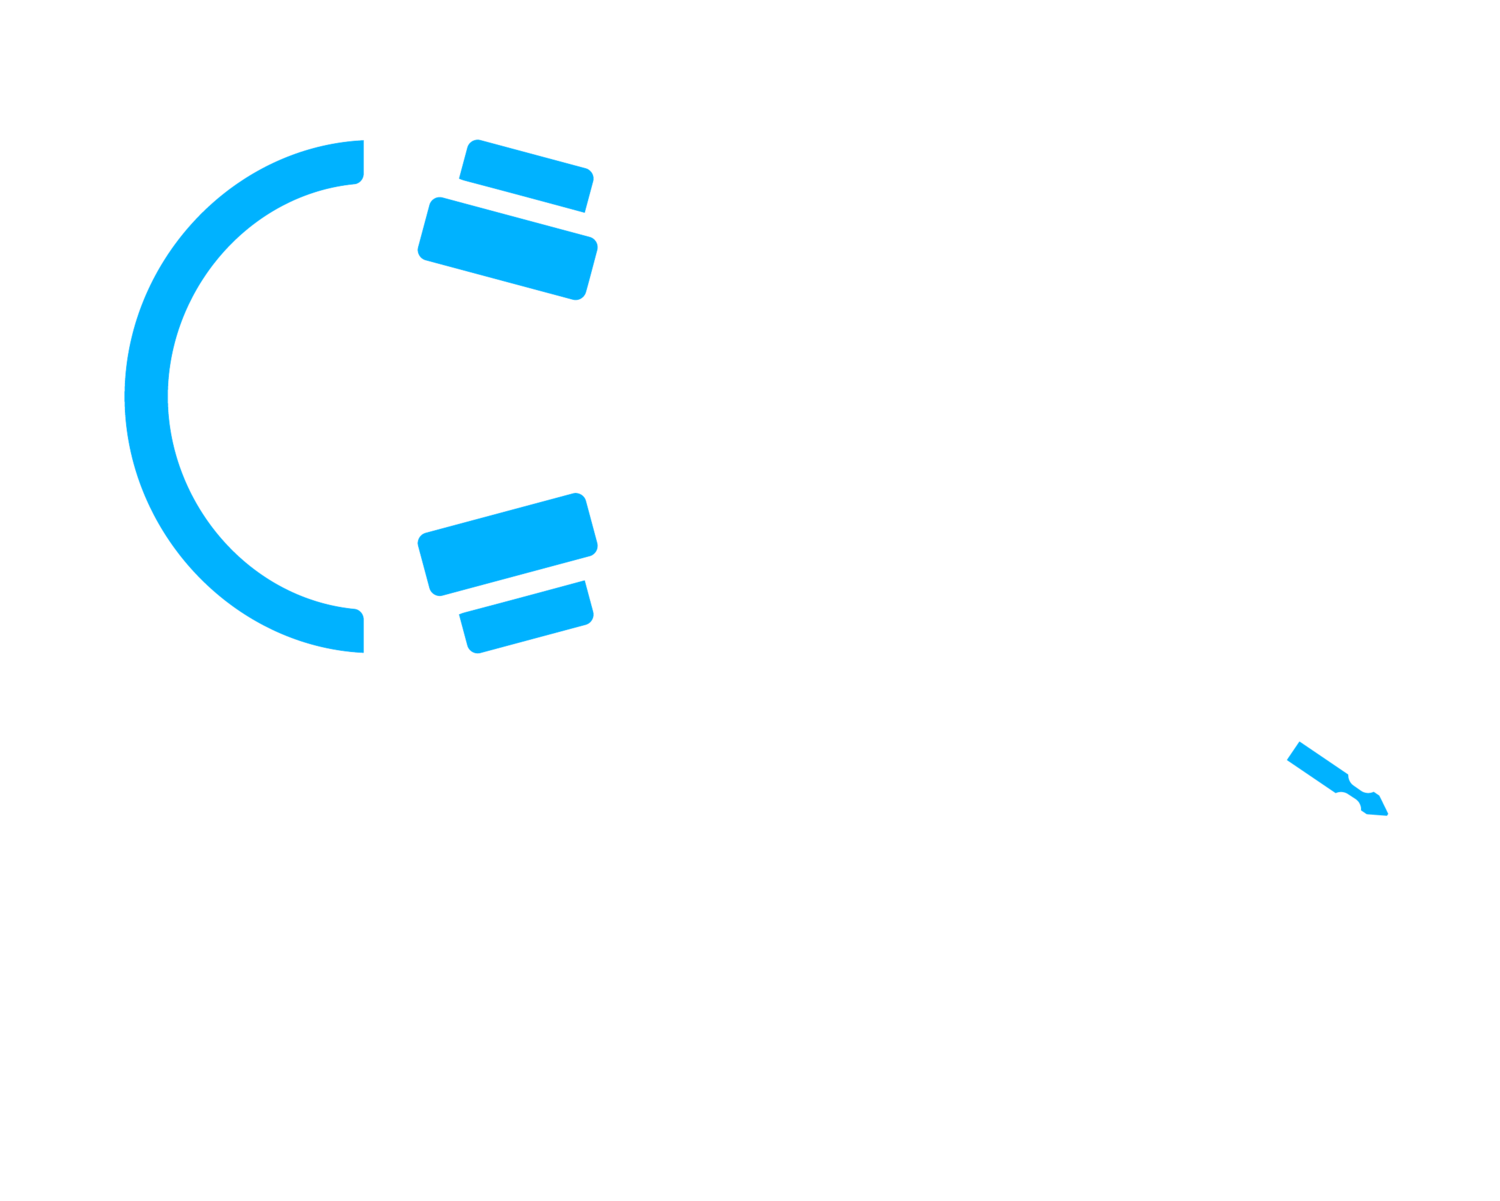 Composed Audio